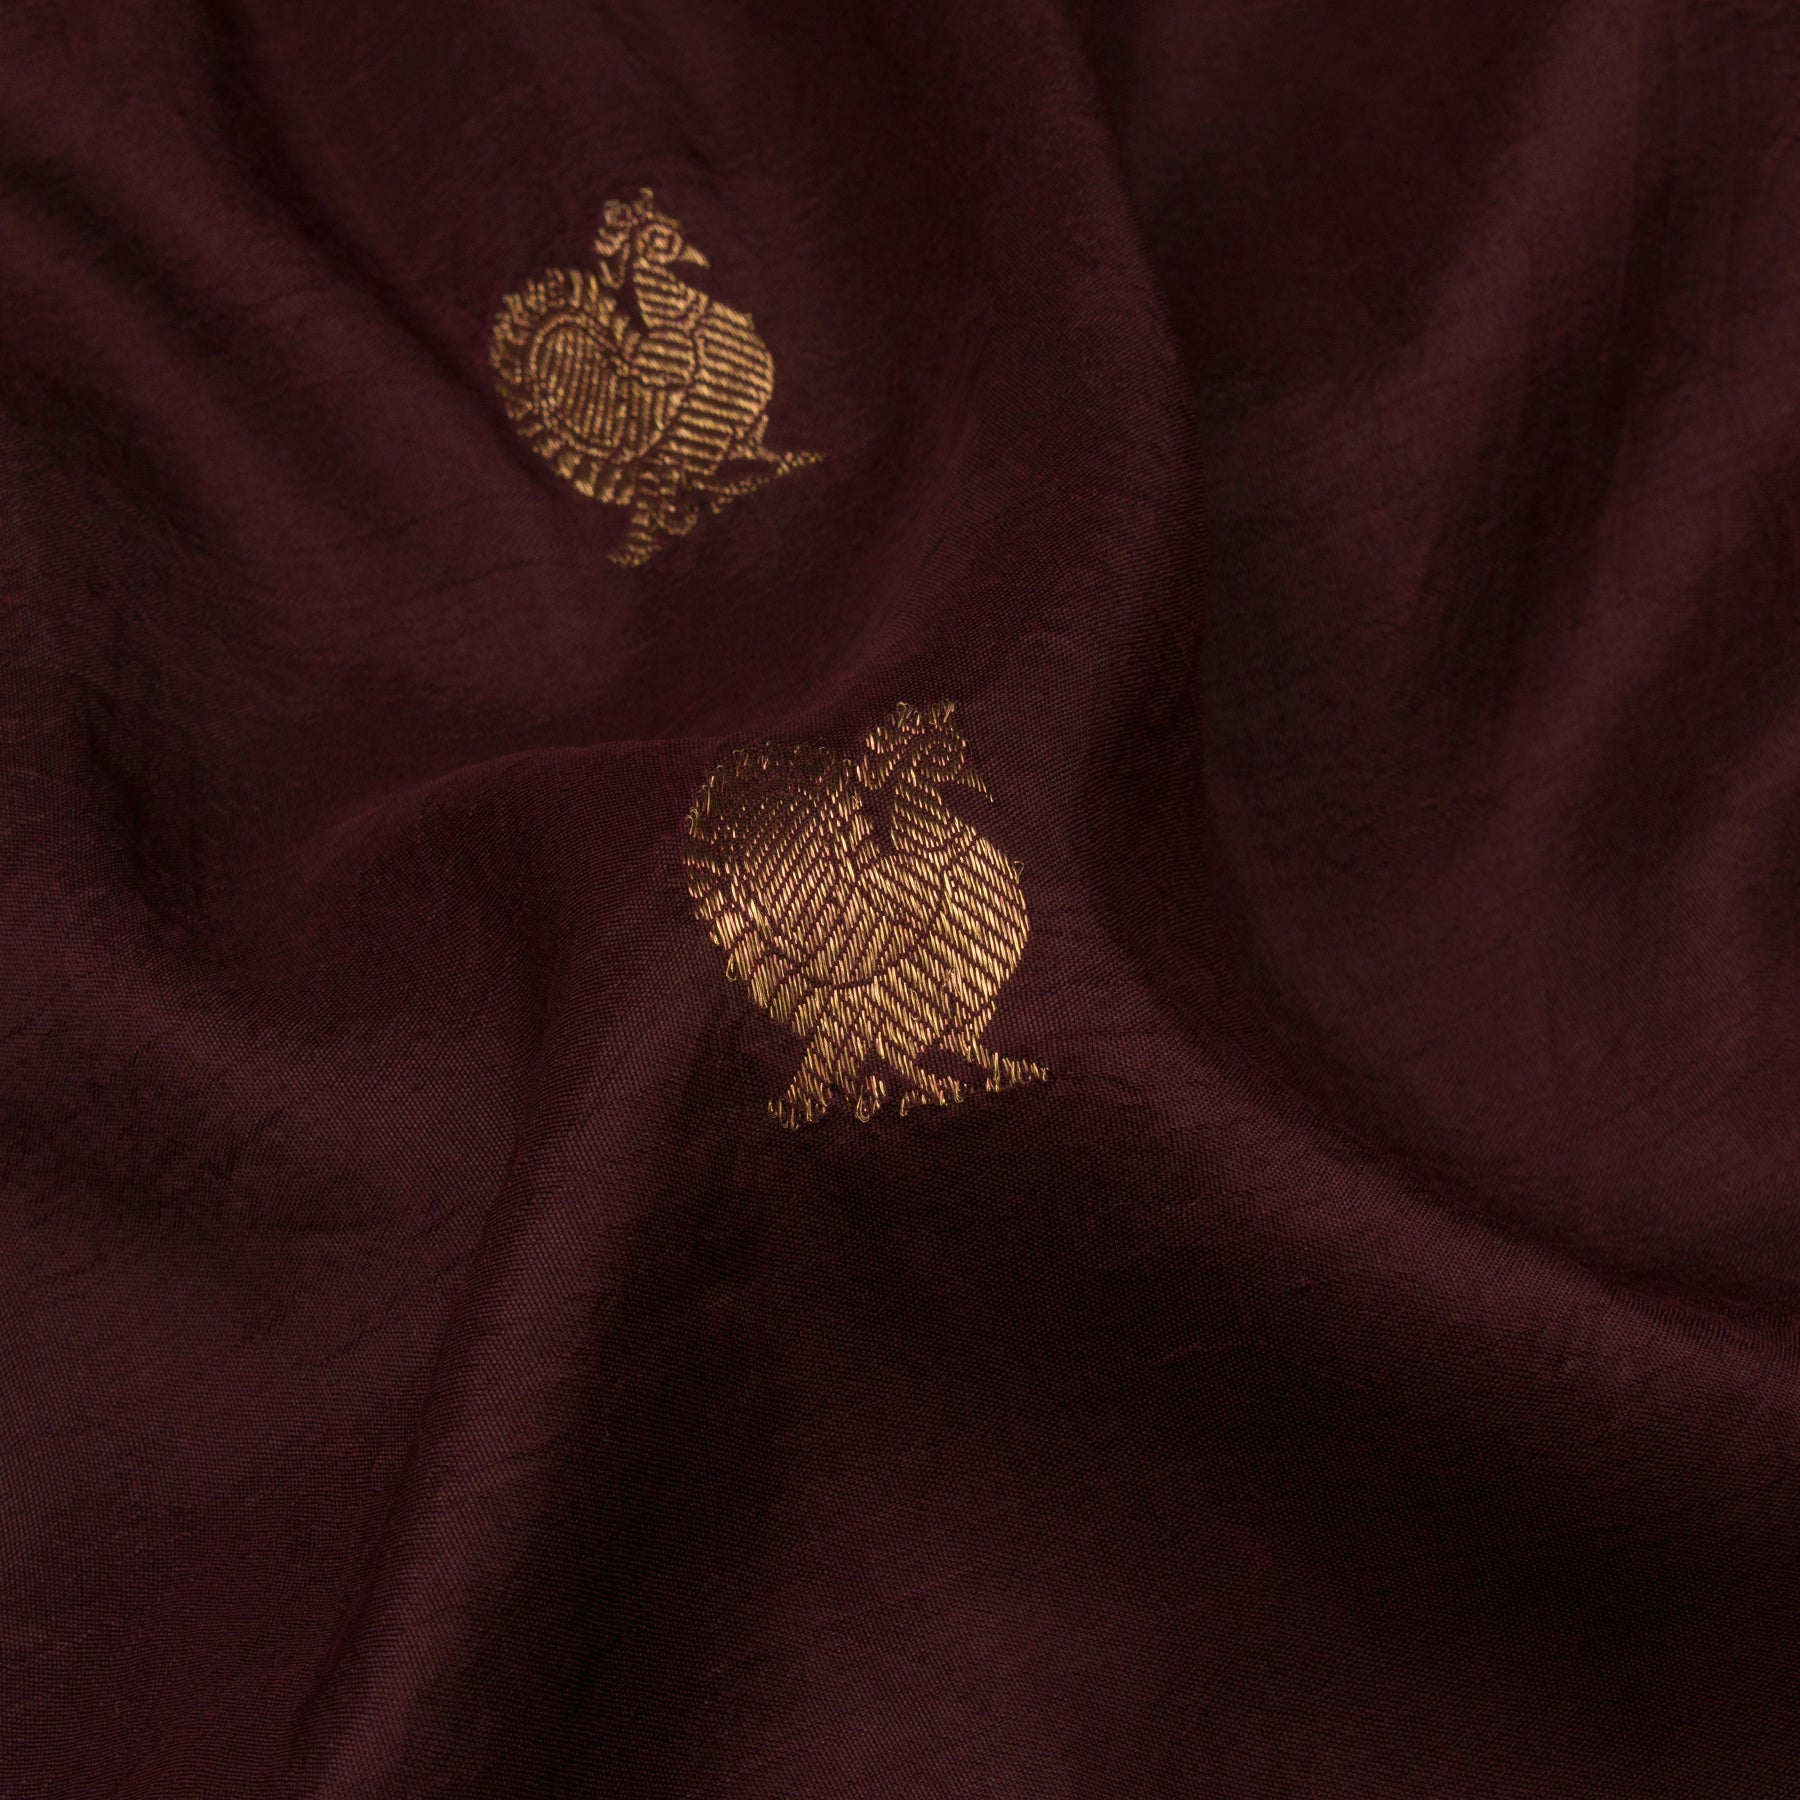 Kanakavalli Kanjivaram Silk Sari 20-110-HS001-01805 - Fabric View